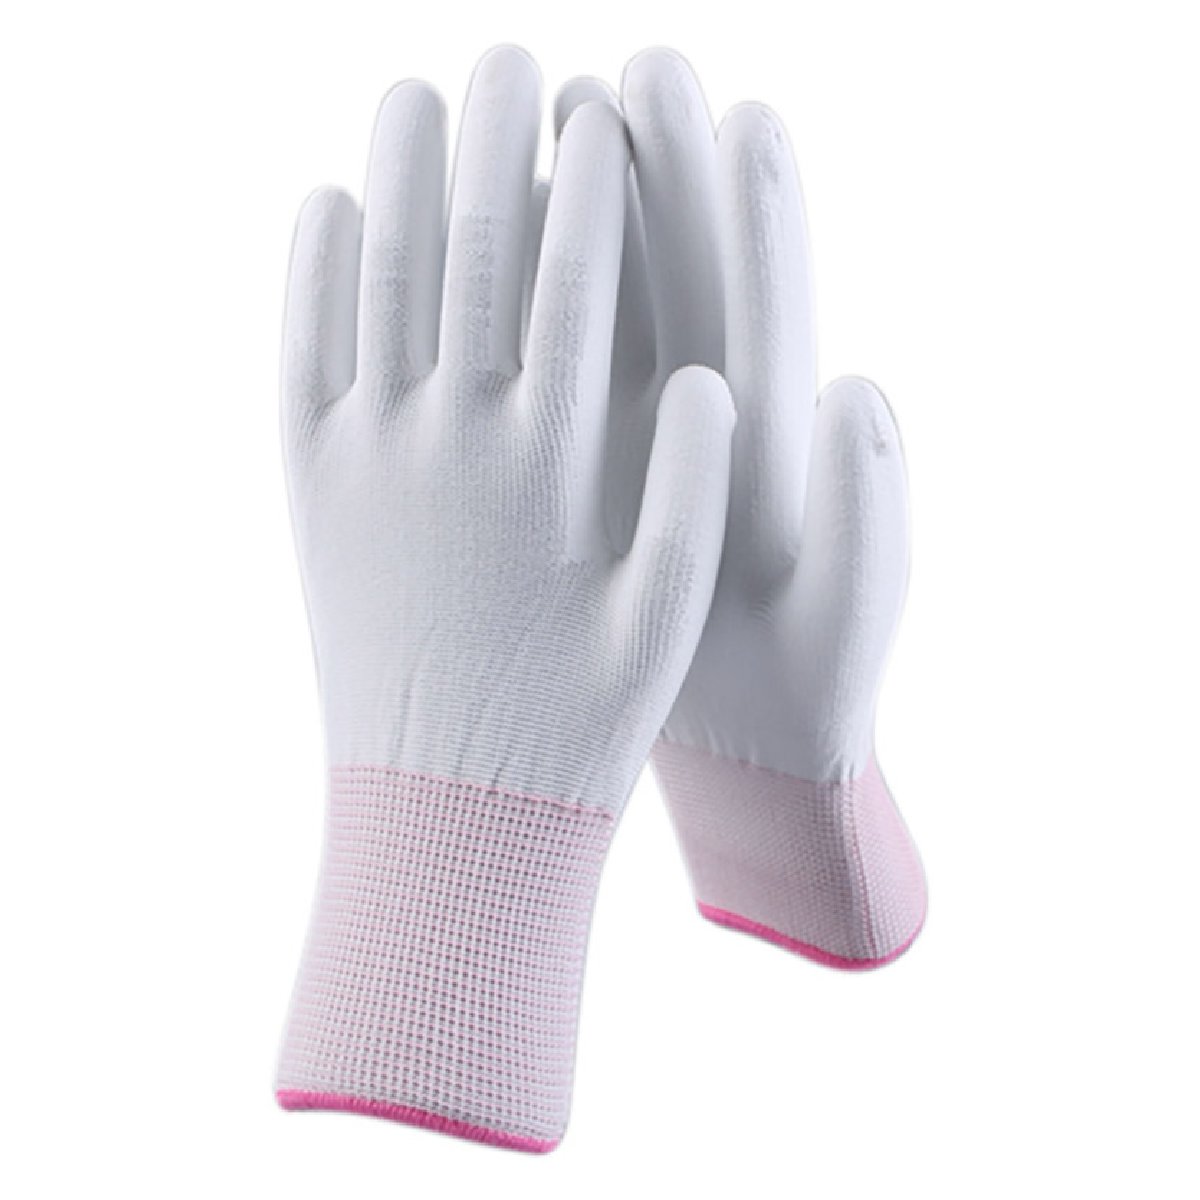 Перчатки рабочие с полиуретановым покрытием белые с высокой тактильной чувствительностью PUW1, р-р L (106736)Купить